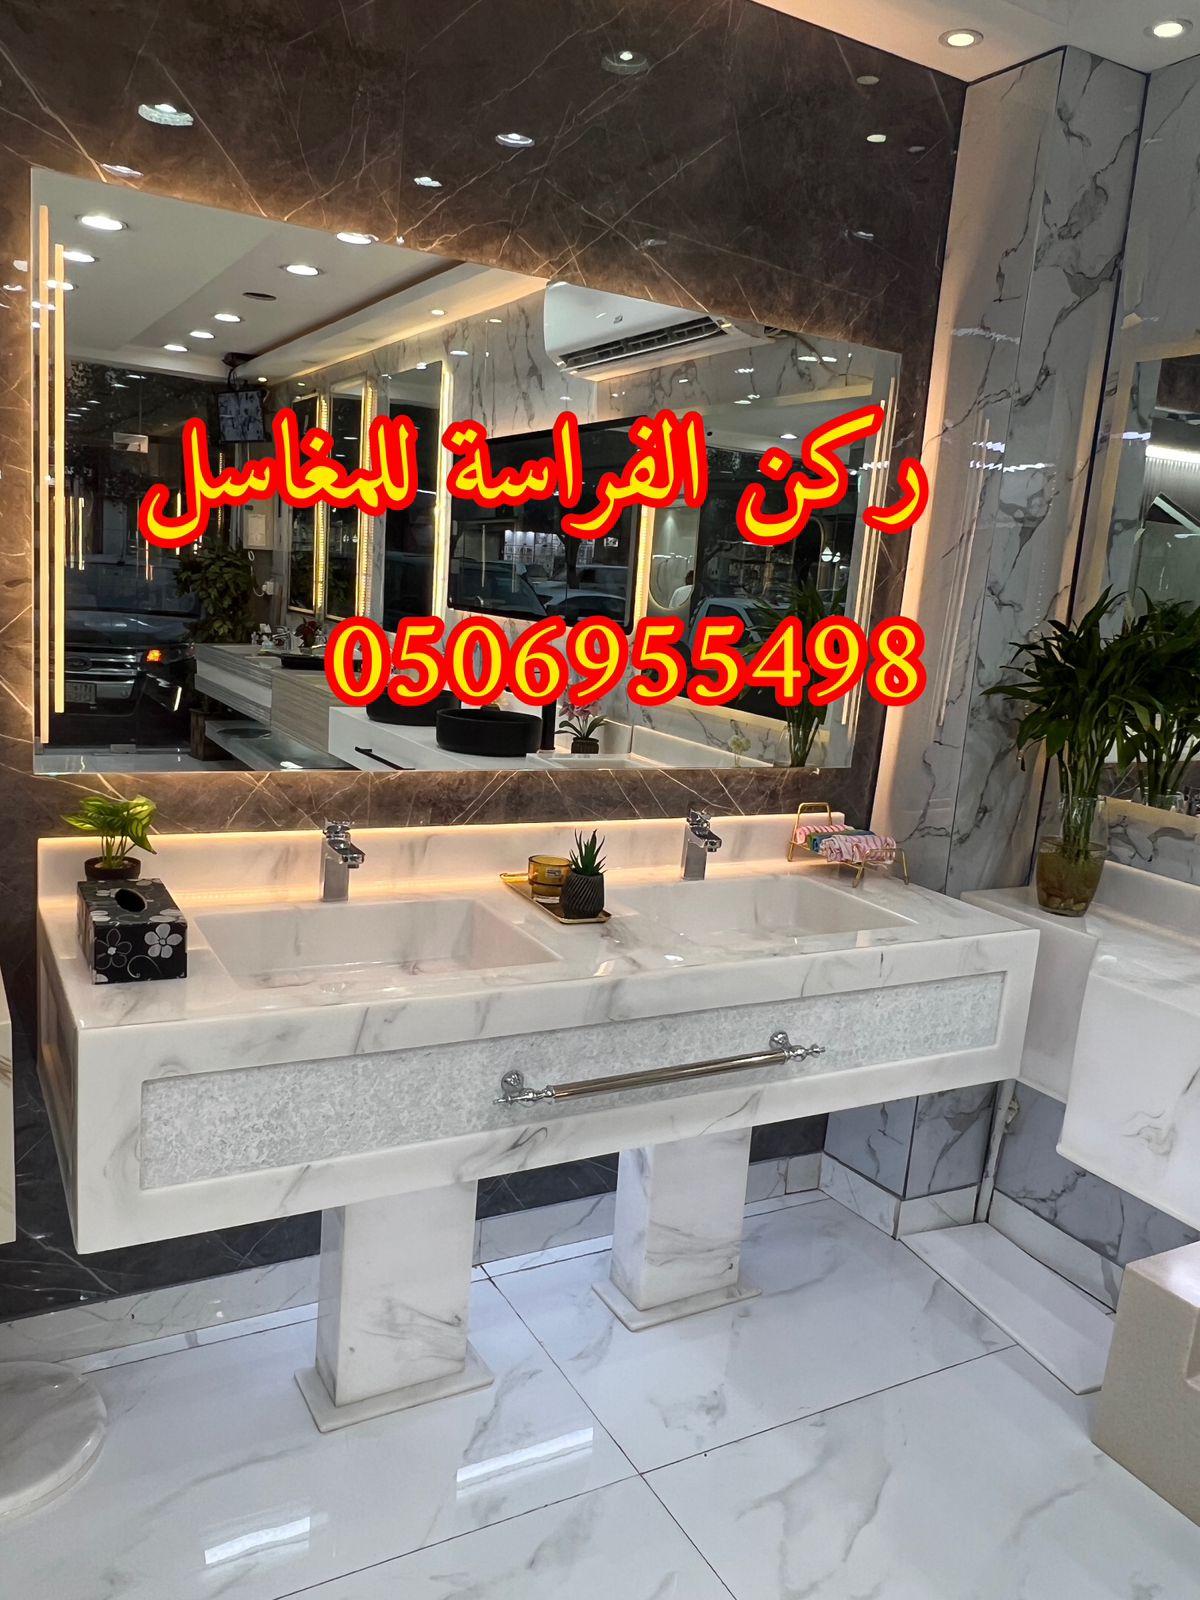 الرياض - احواض مغاسل رخام في الرياض,0506955498 554703042